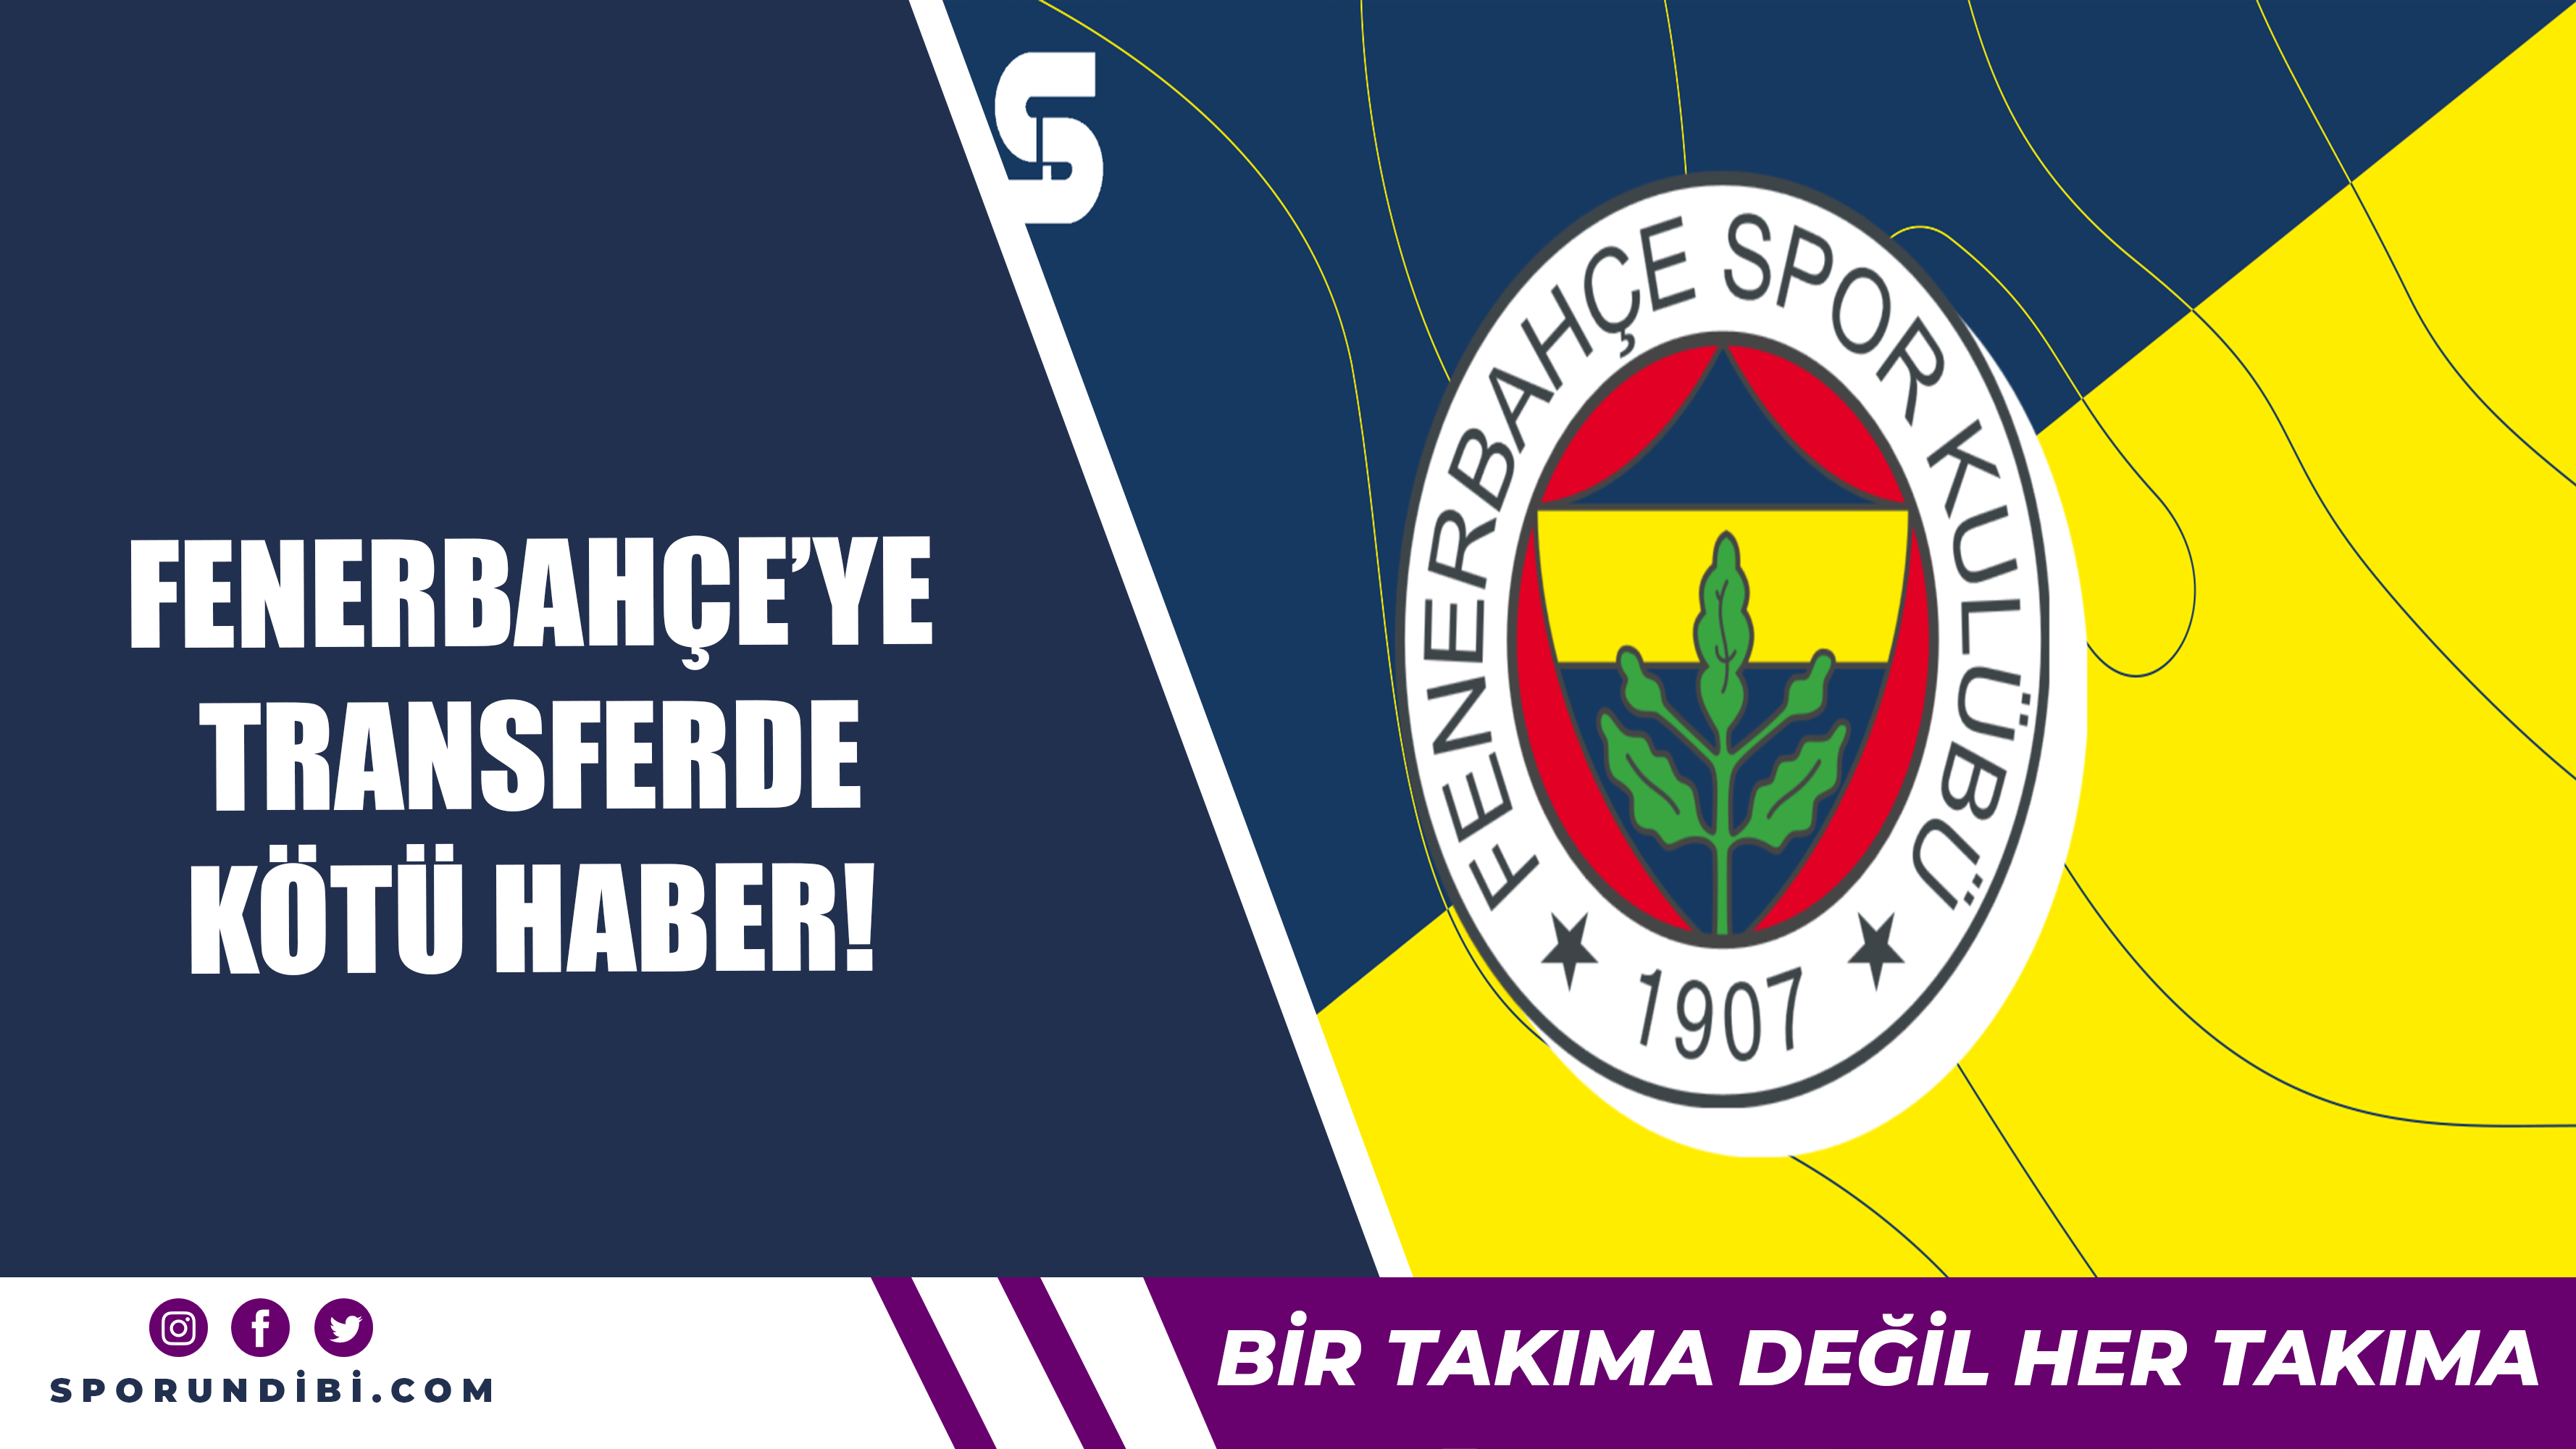 Fenerbahçe'ye transferde kötü haber!